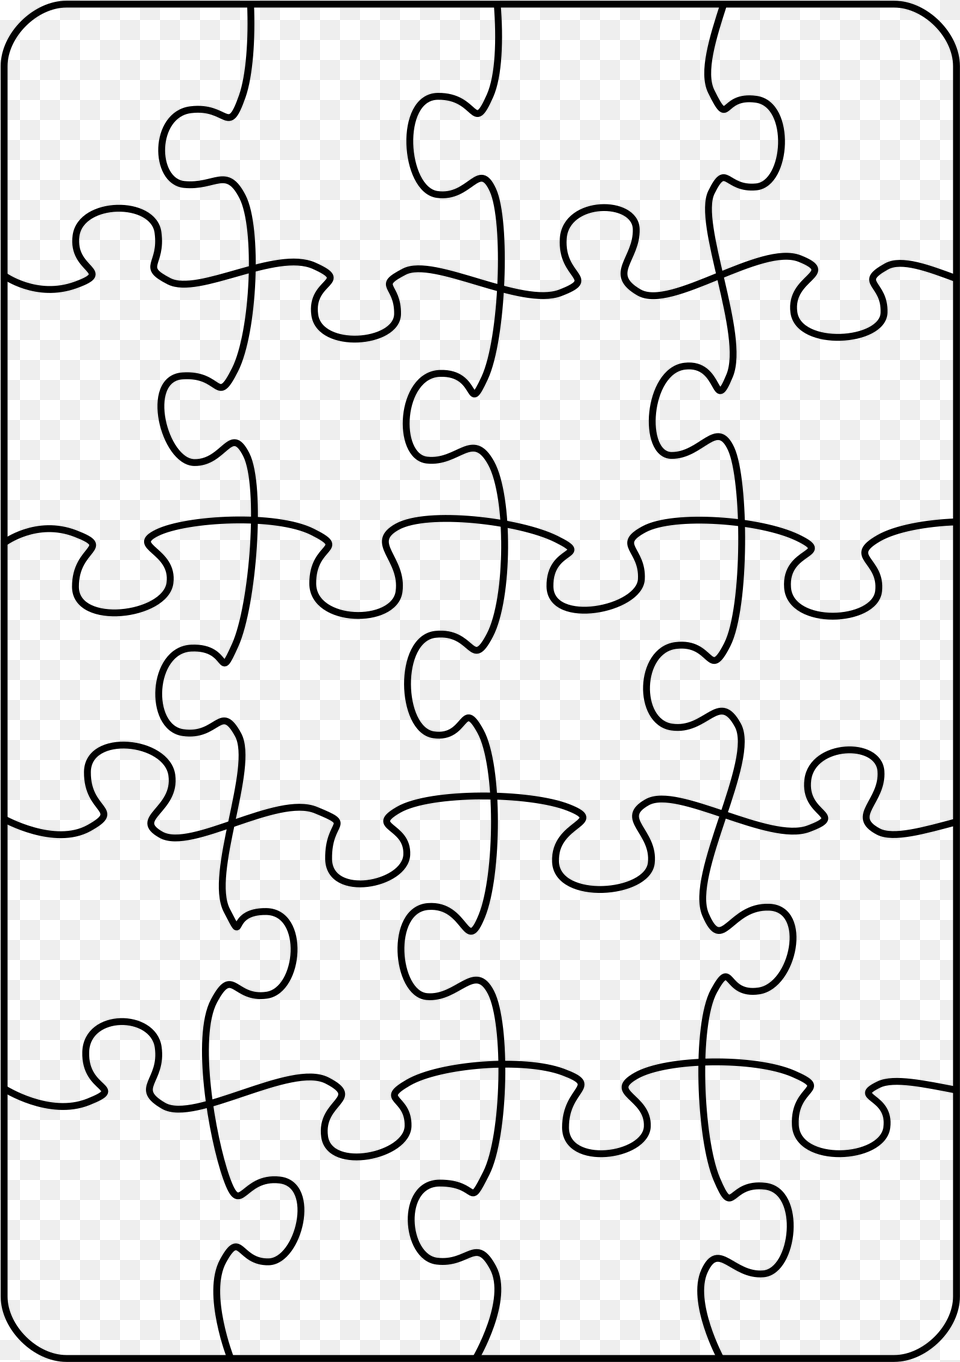 Puzzle Piece Clipart Puzzle 20 Pieces, Gray Free Transparent Png